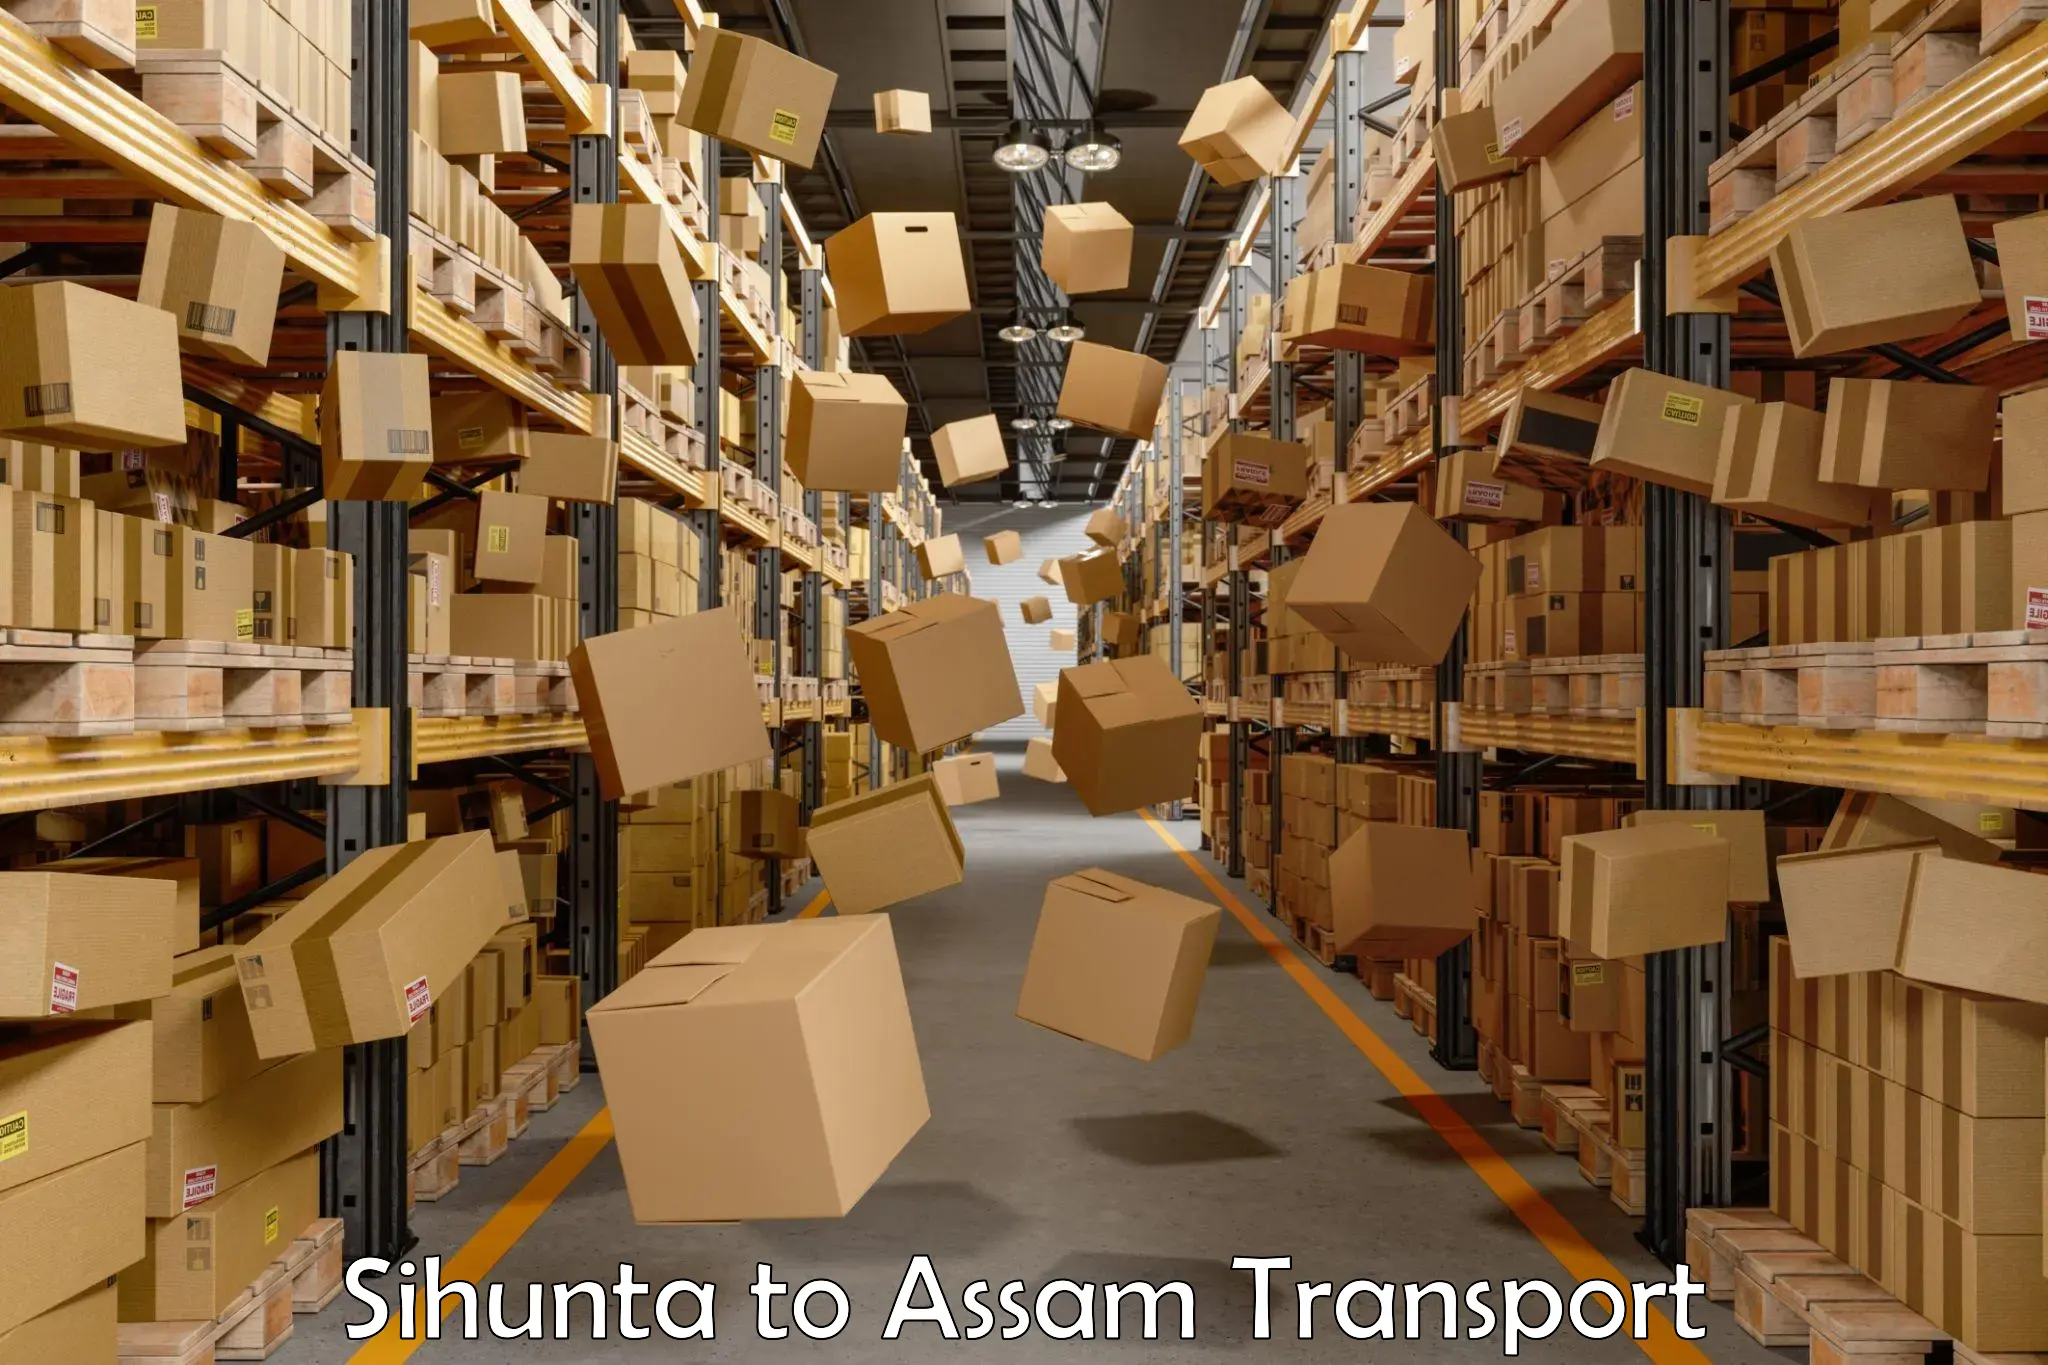 Furniture transport service Sihunta to Assam